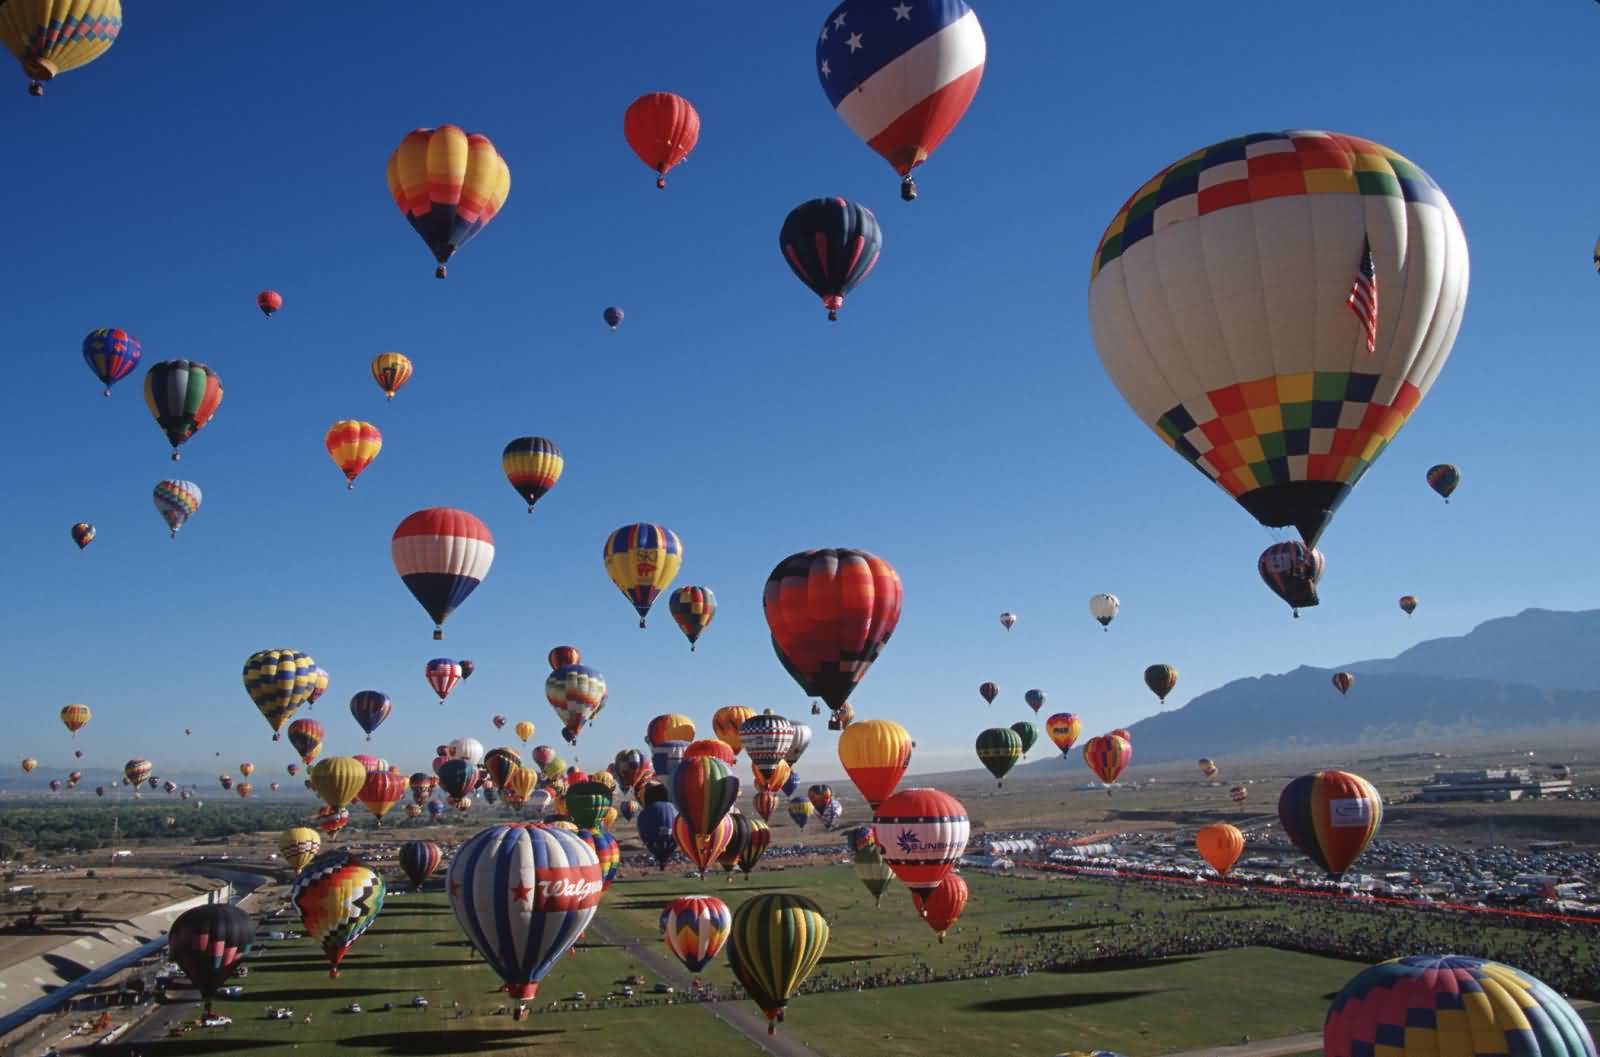 Balloons In The Air At The Albuquerque Balloon Festival